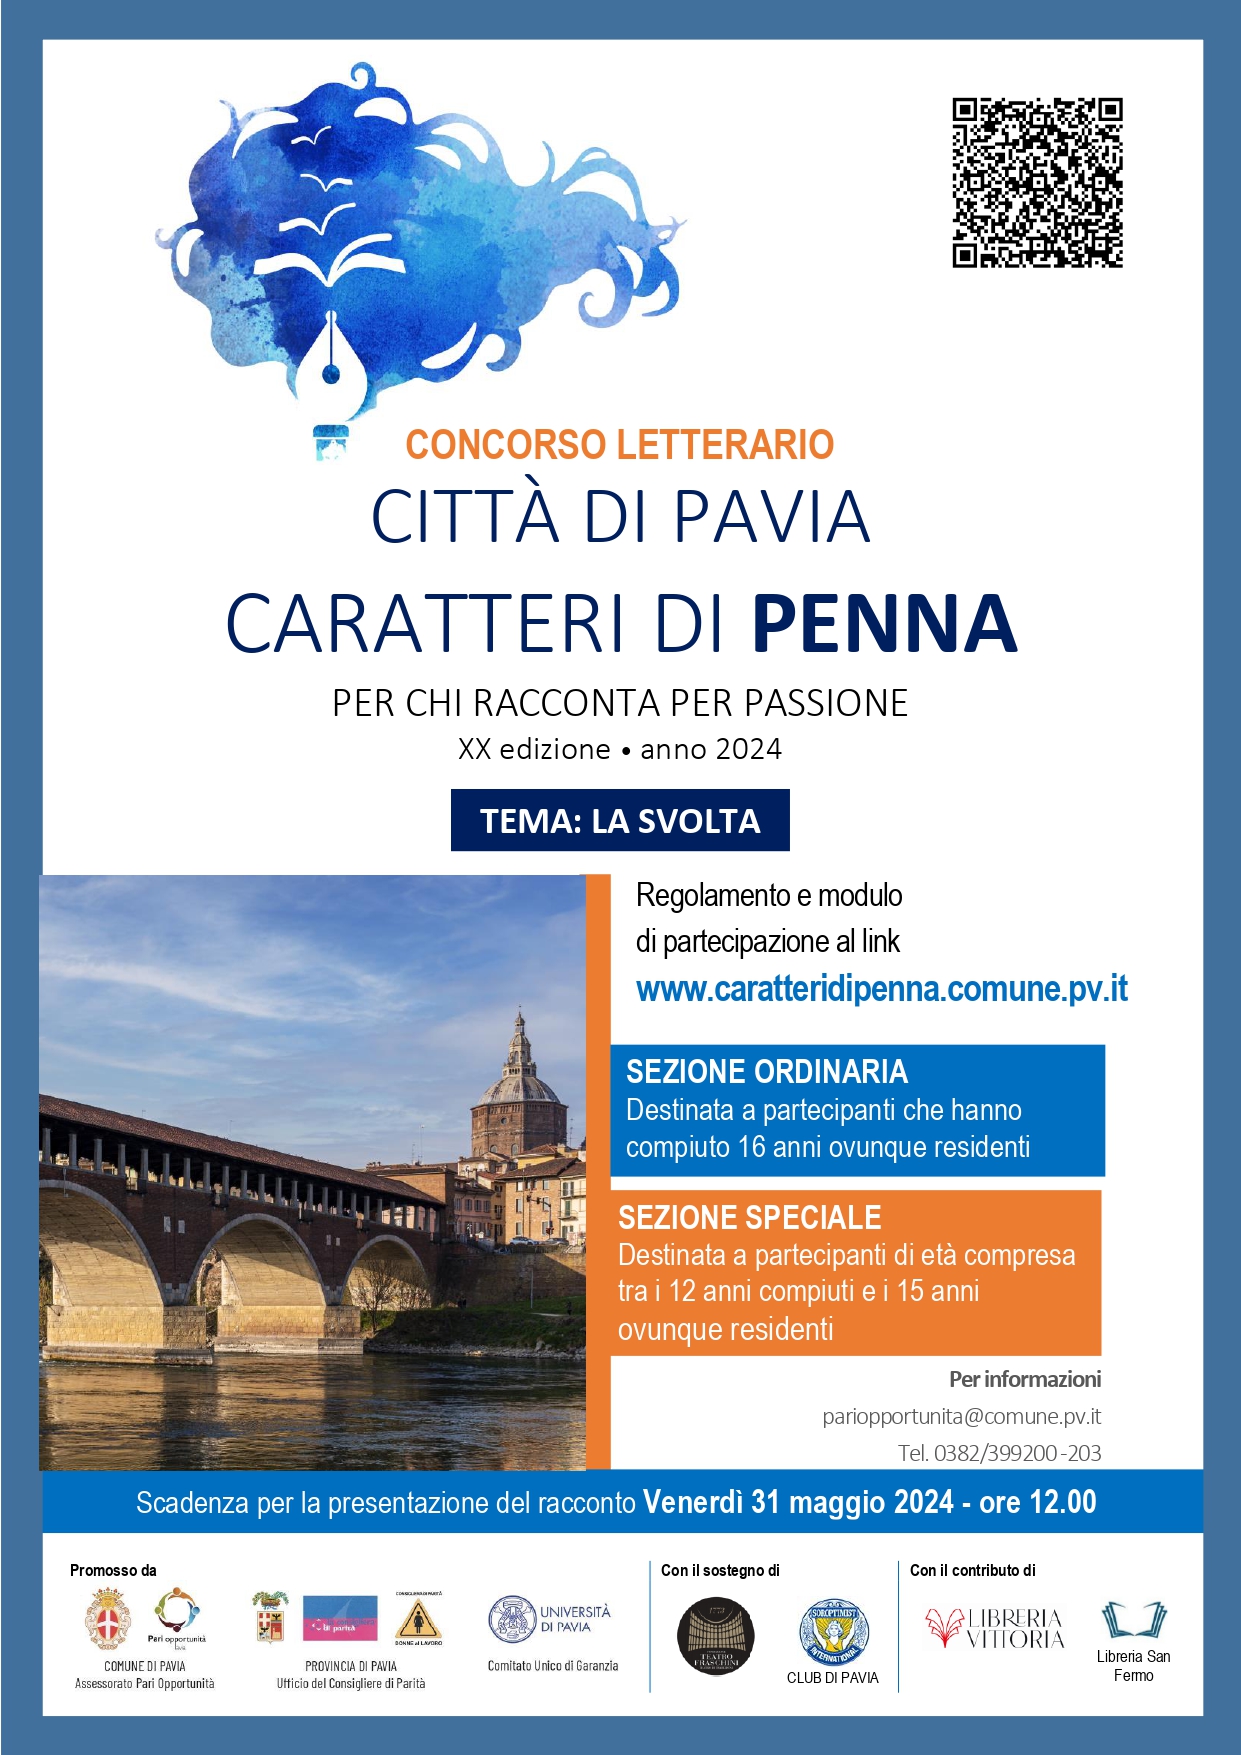 Concorso letterario “Città di Pavia – Caratteri di Penna”